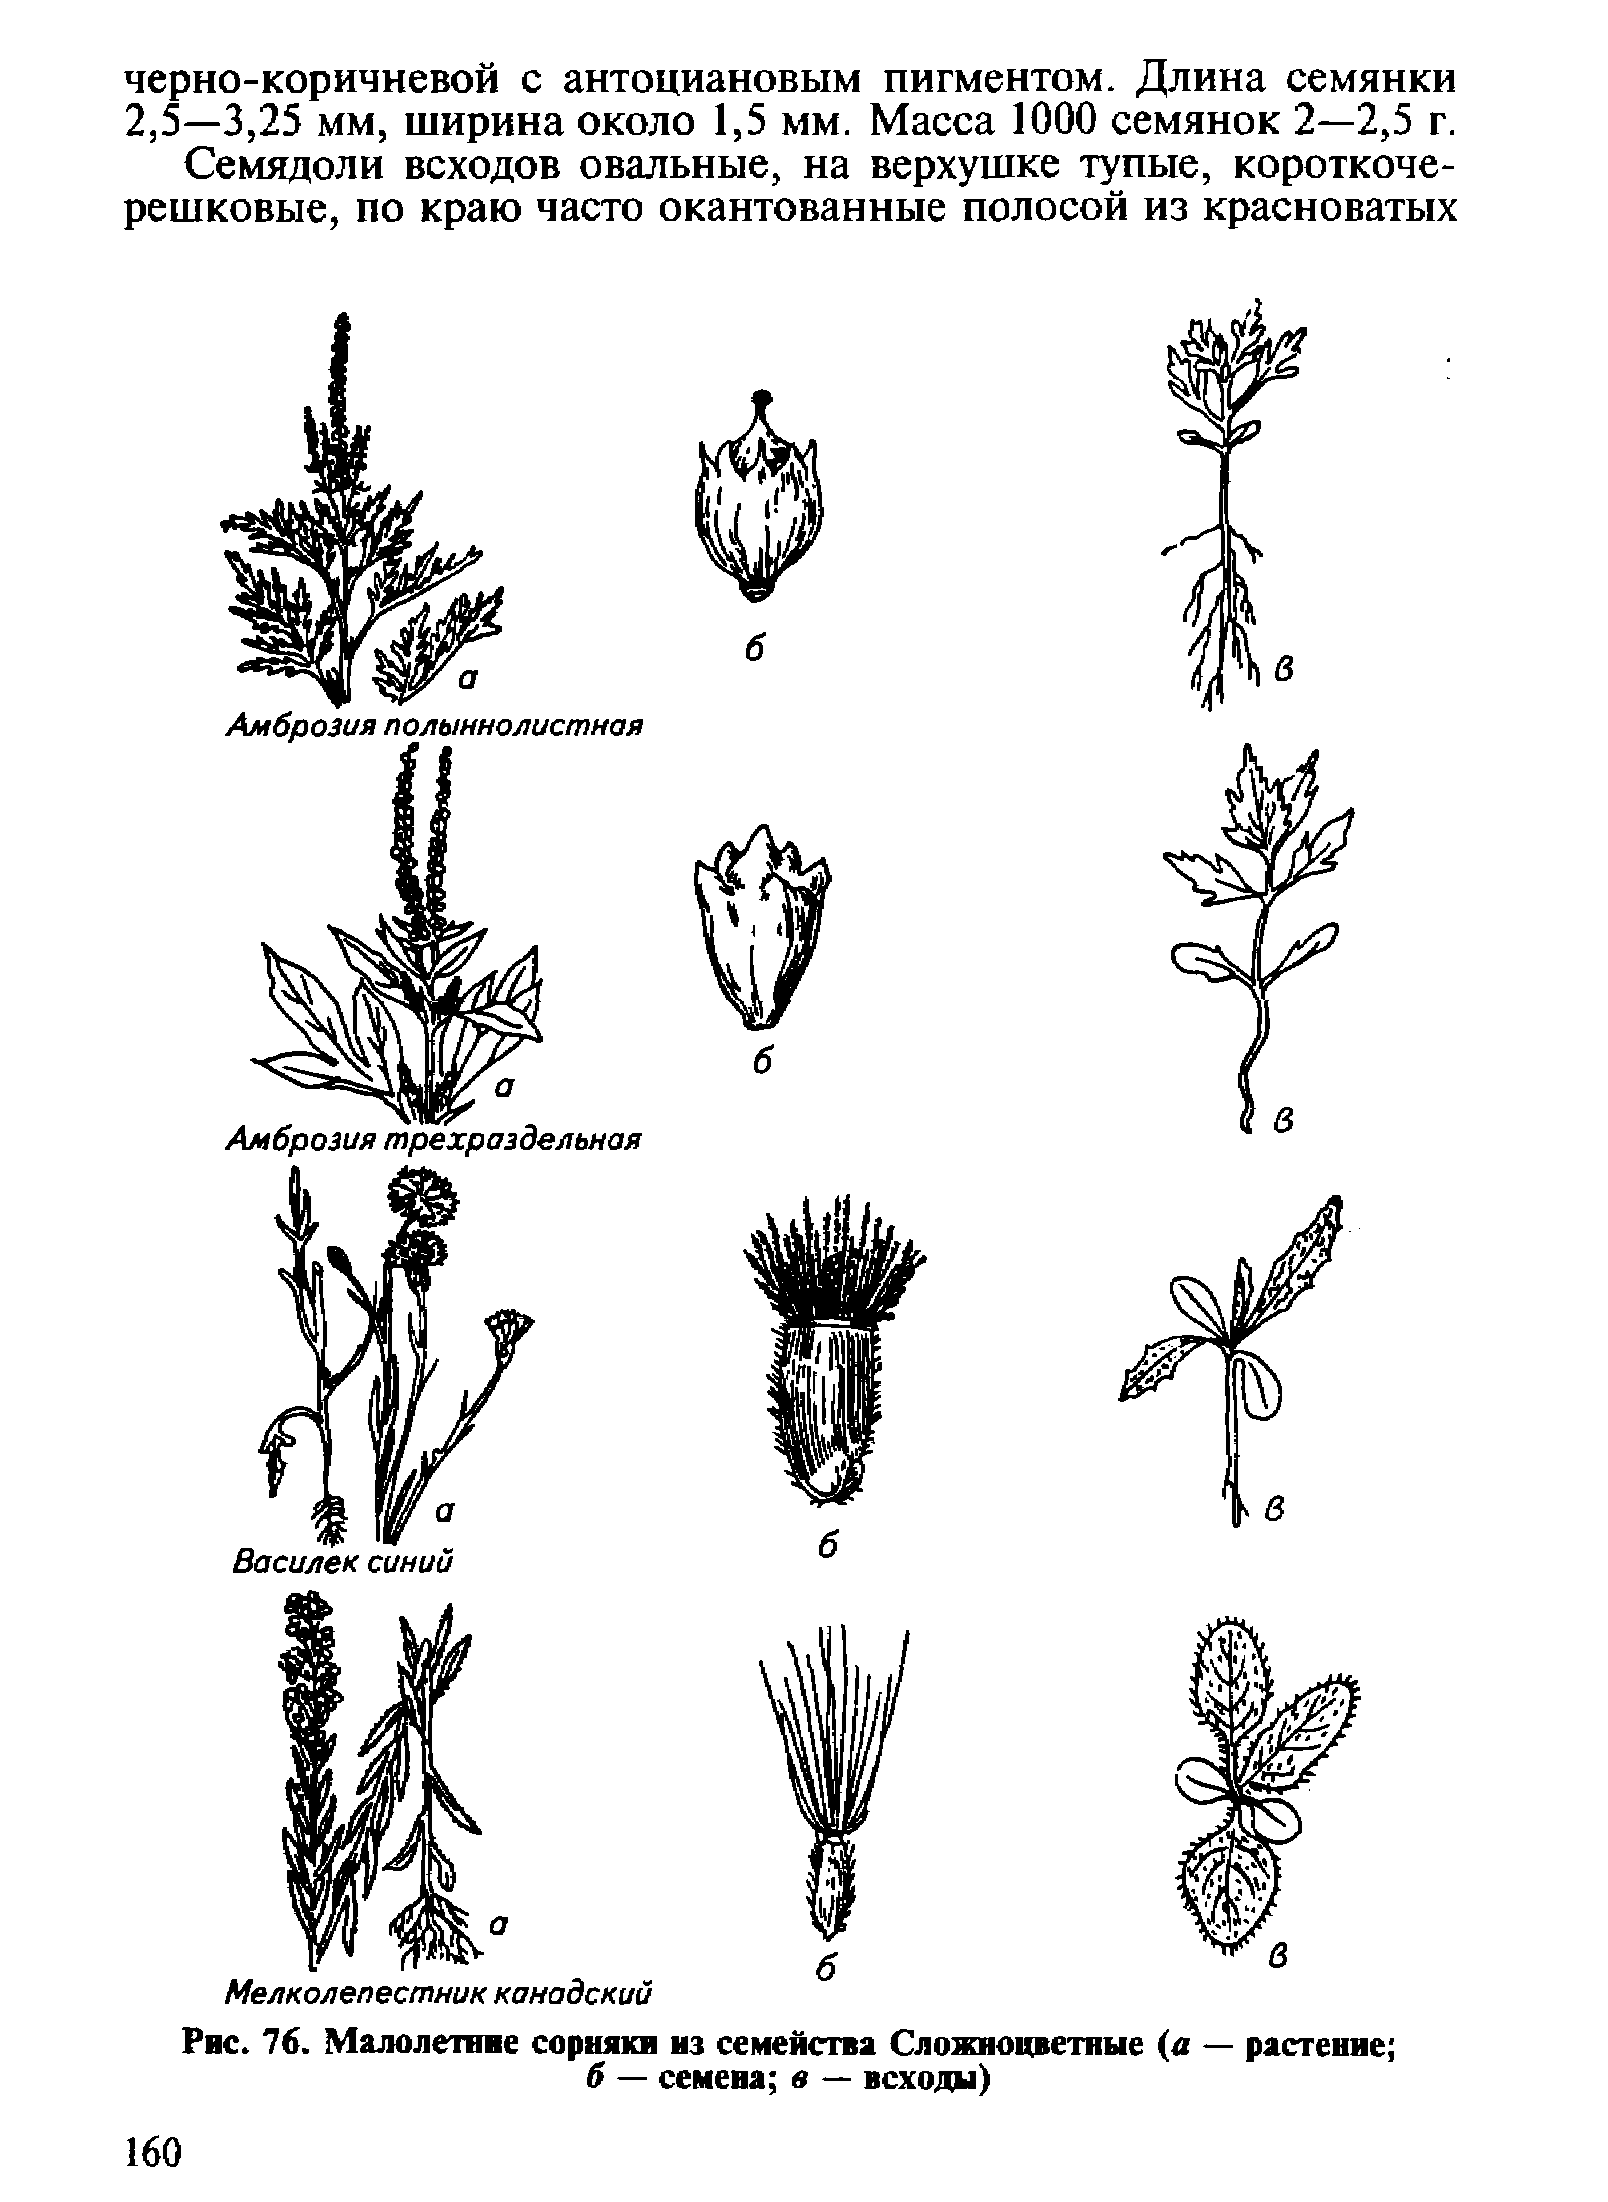 Семена сорных растений семейства сложноцветных